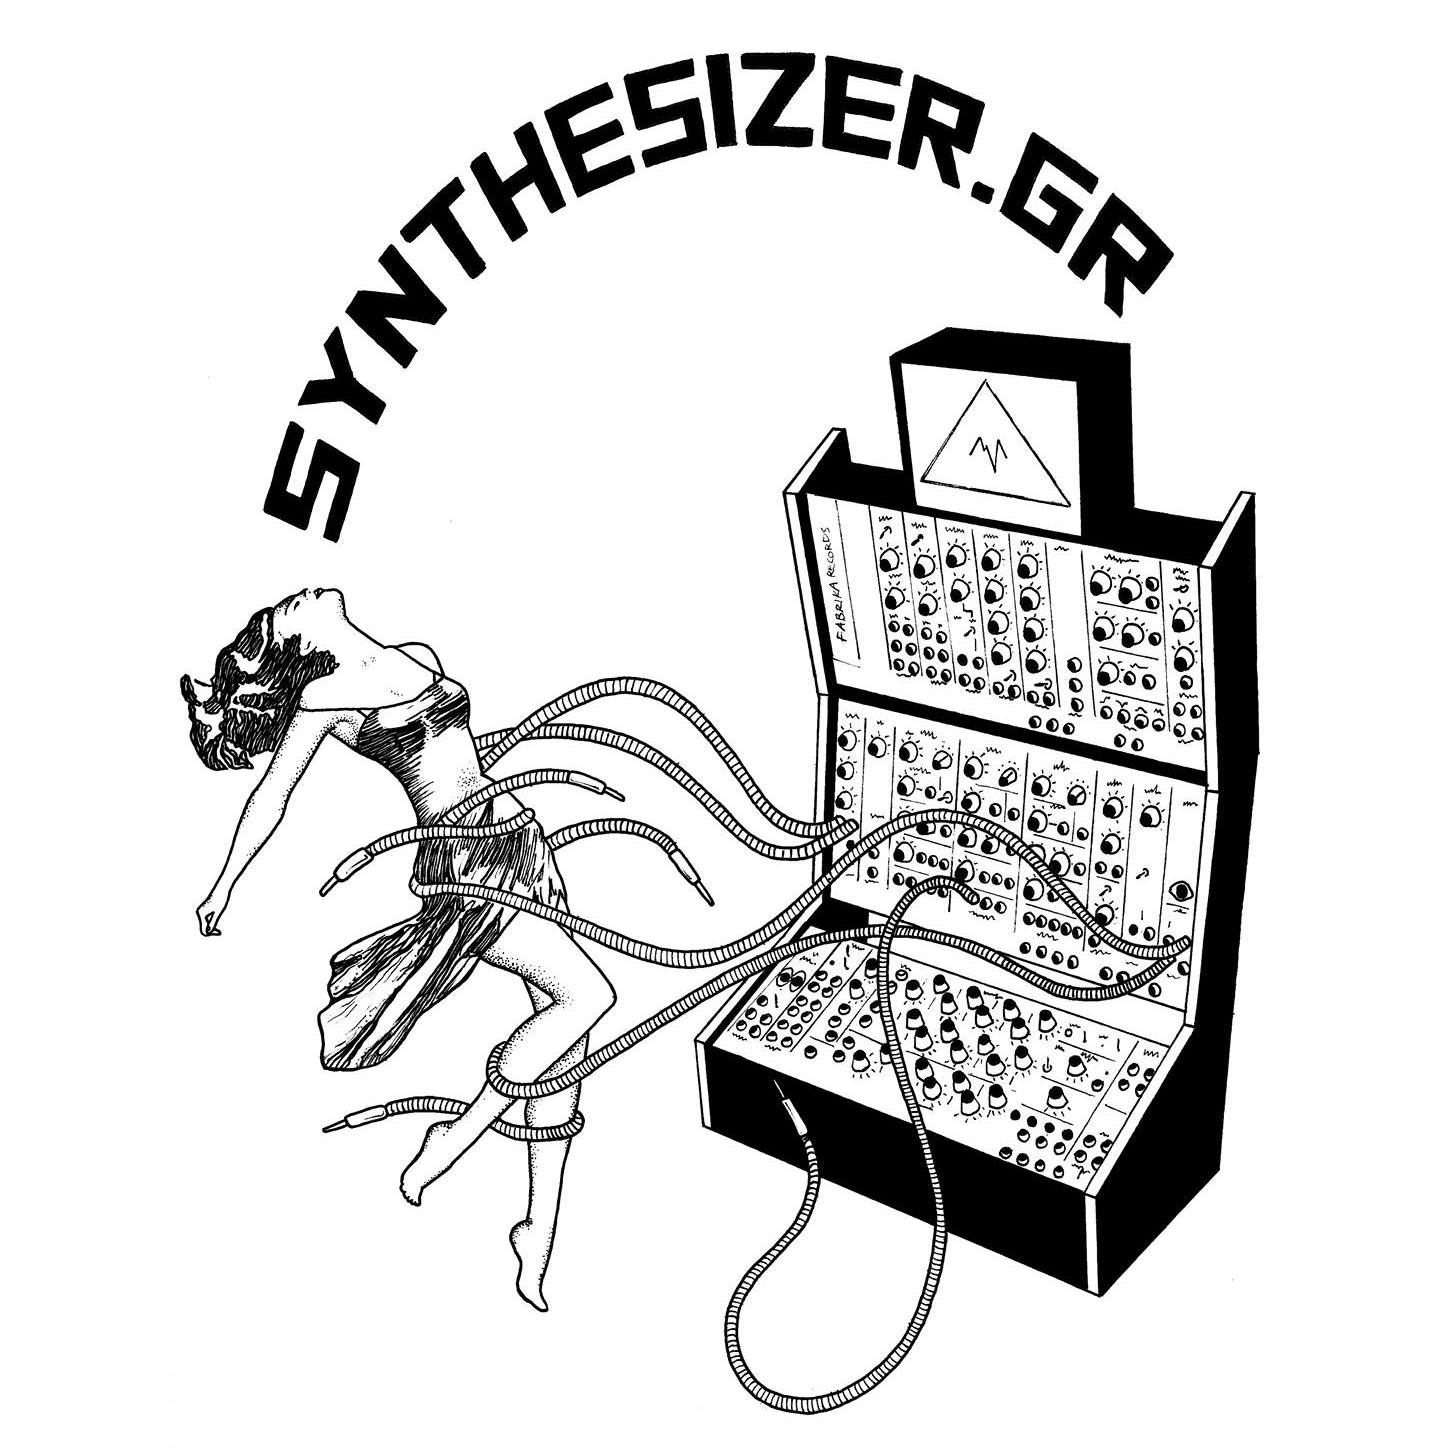 www.synthesizer.gr